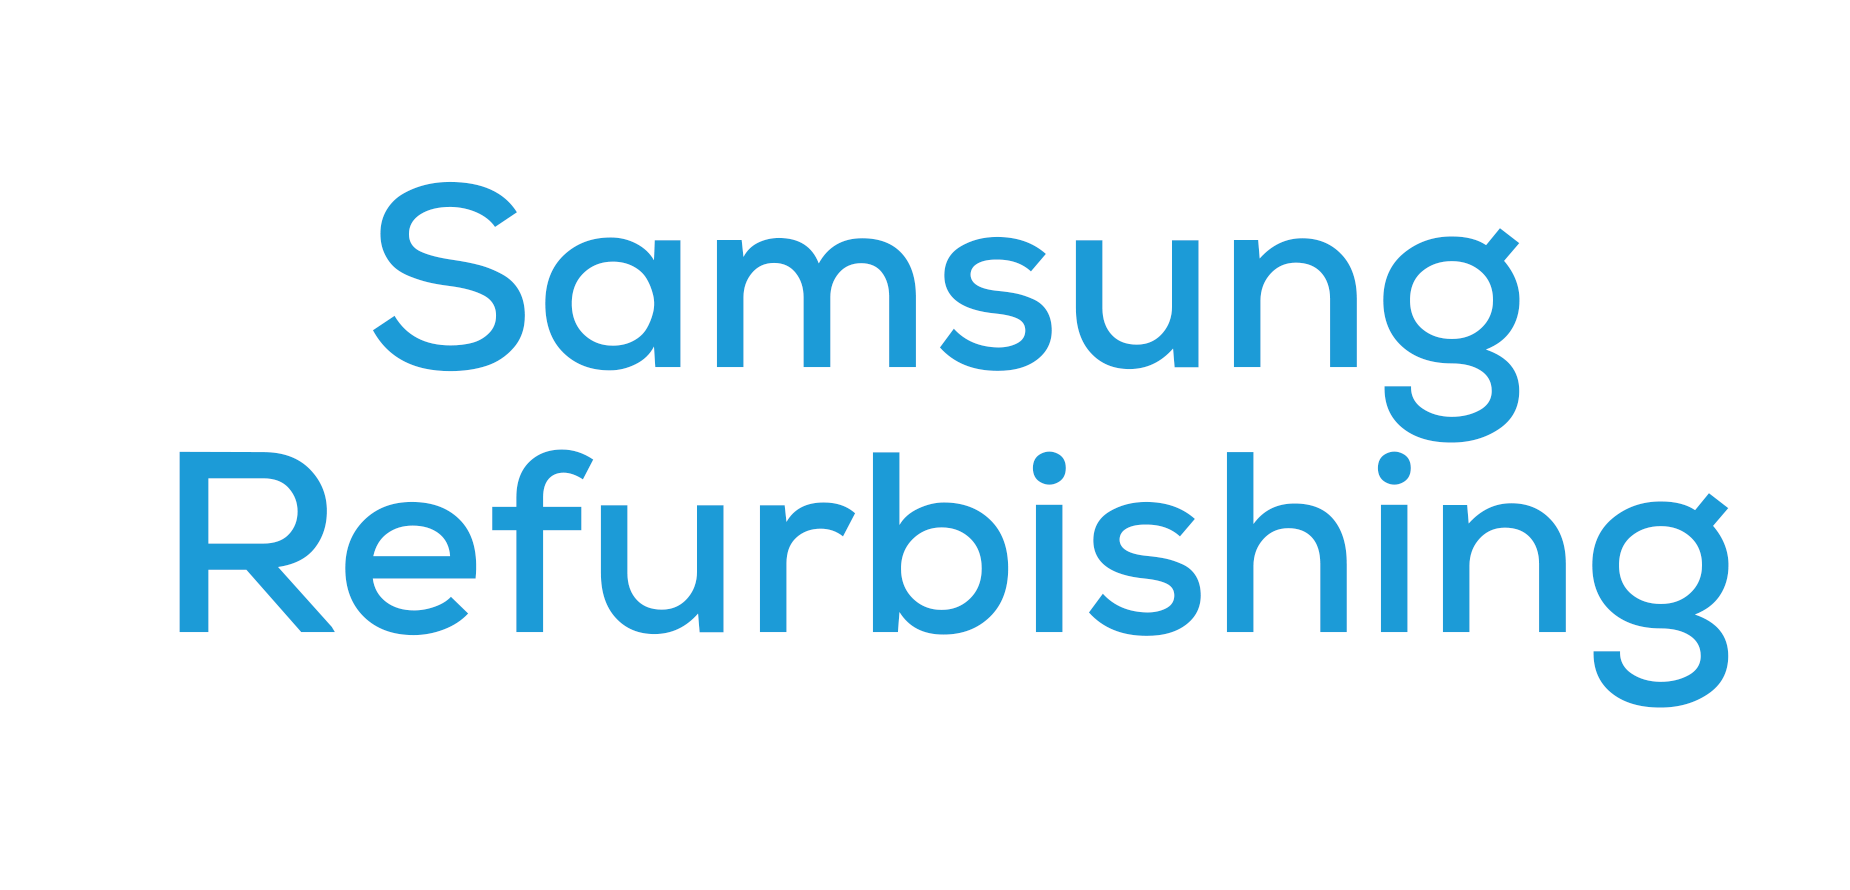 Samsung Refurbishing